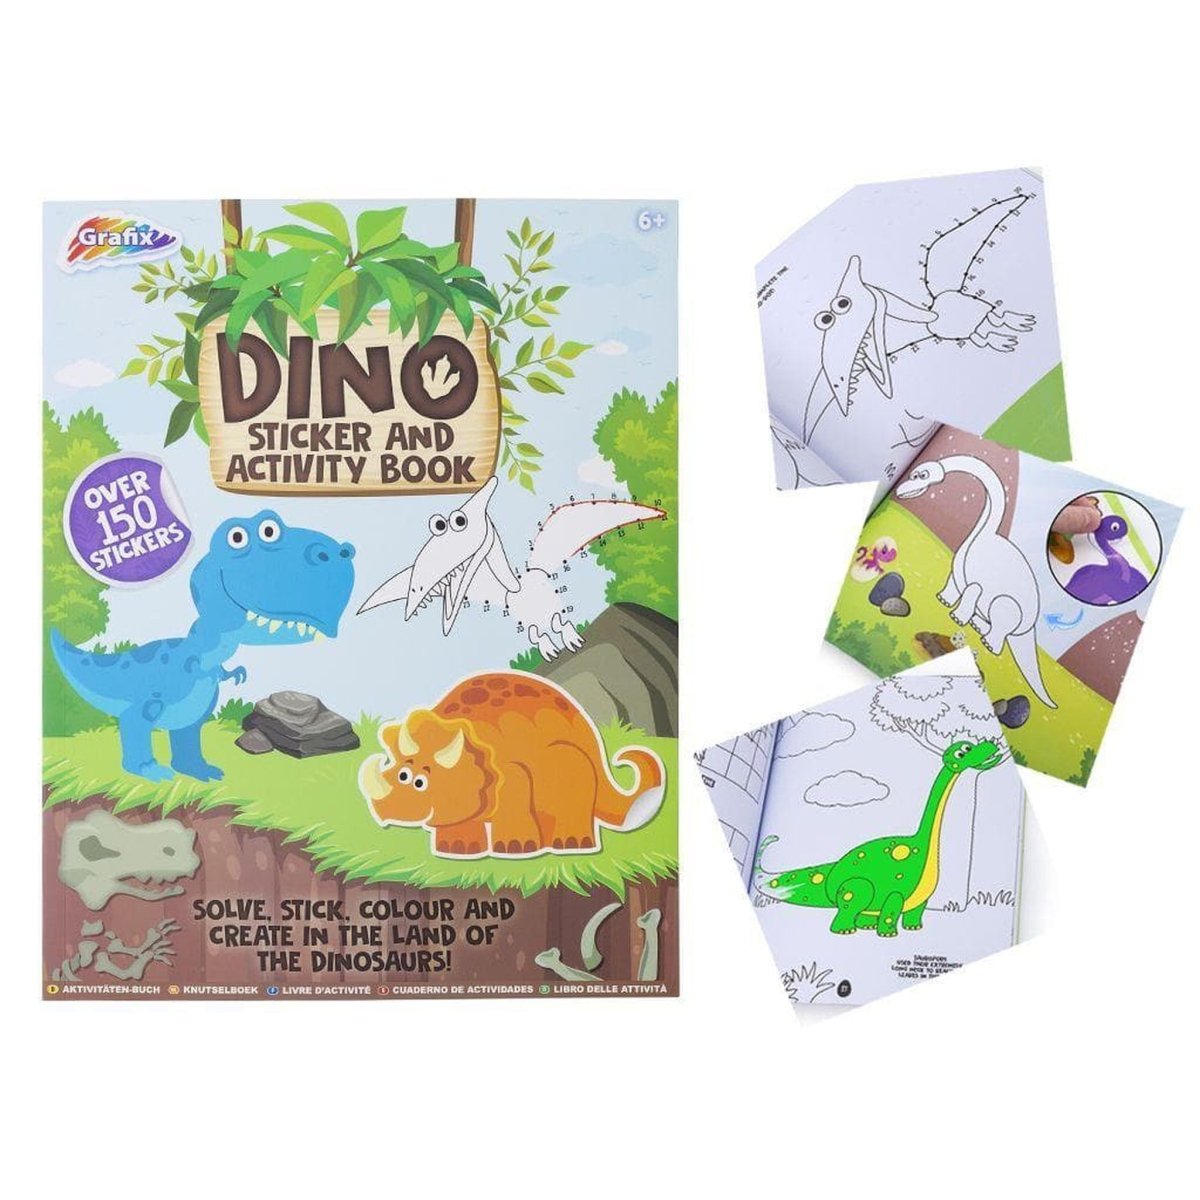 Dinosaur Activity & Sticker Book - Kids Party Craft